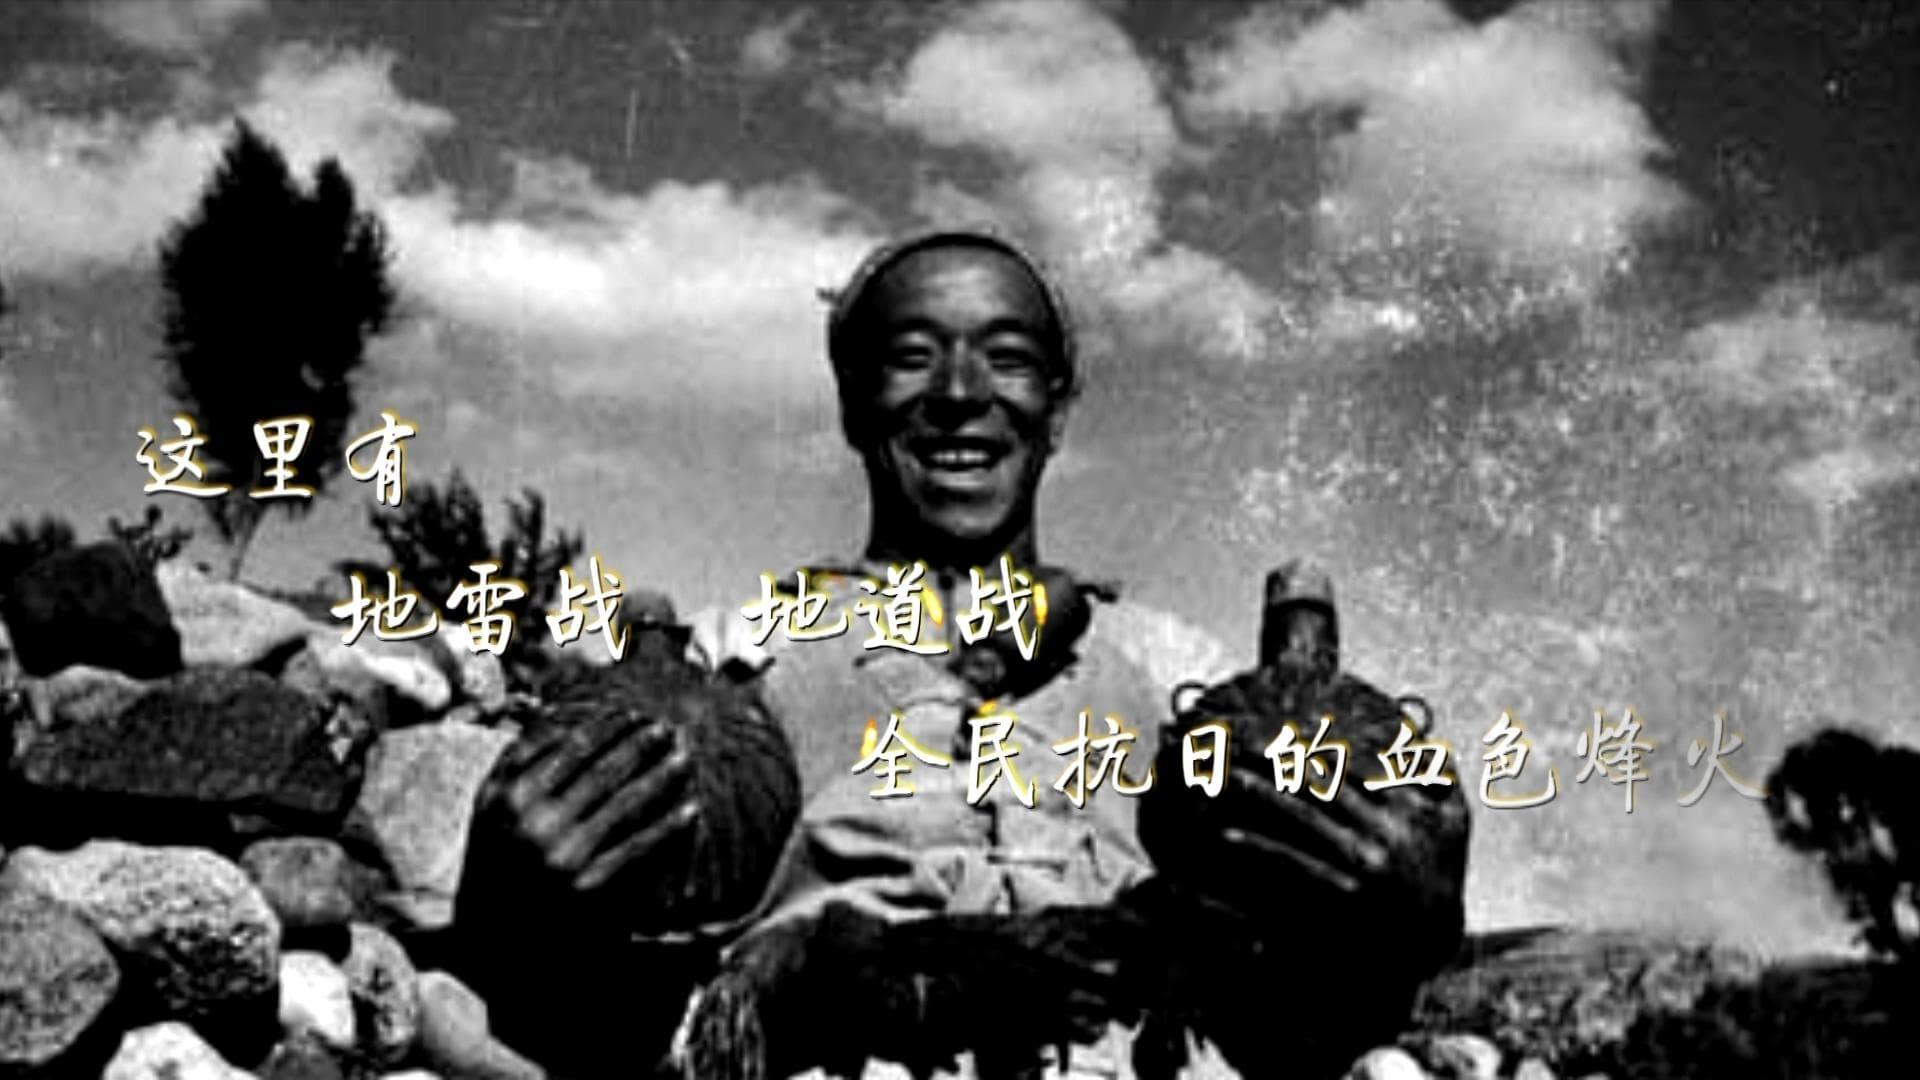 Zhang Changrui backdrop